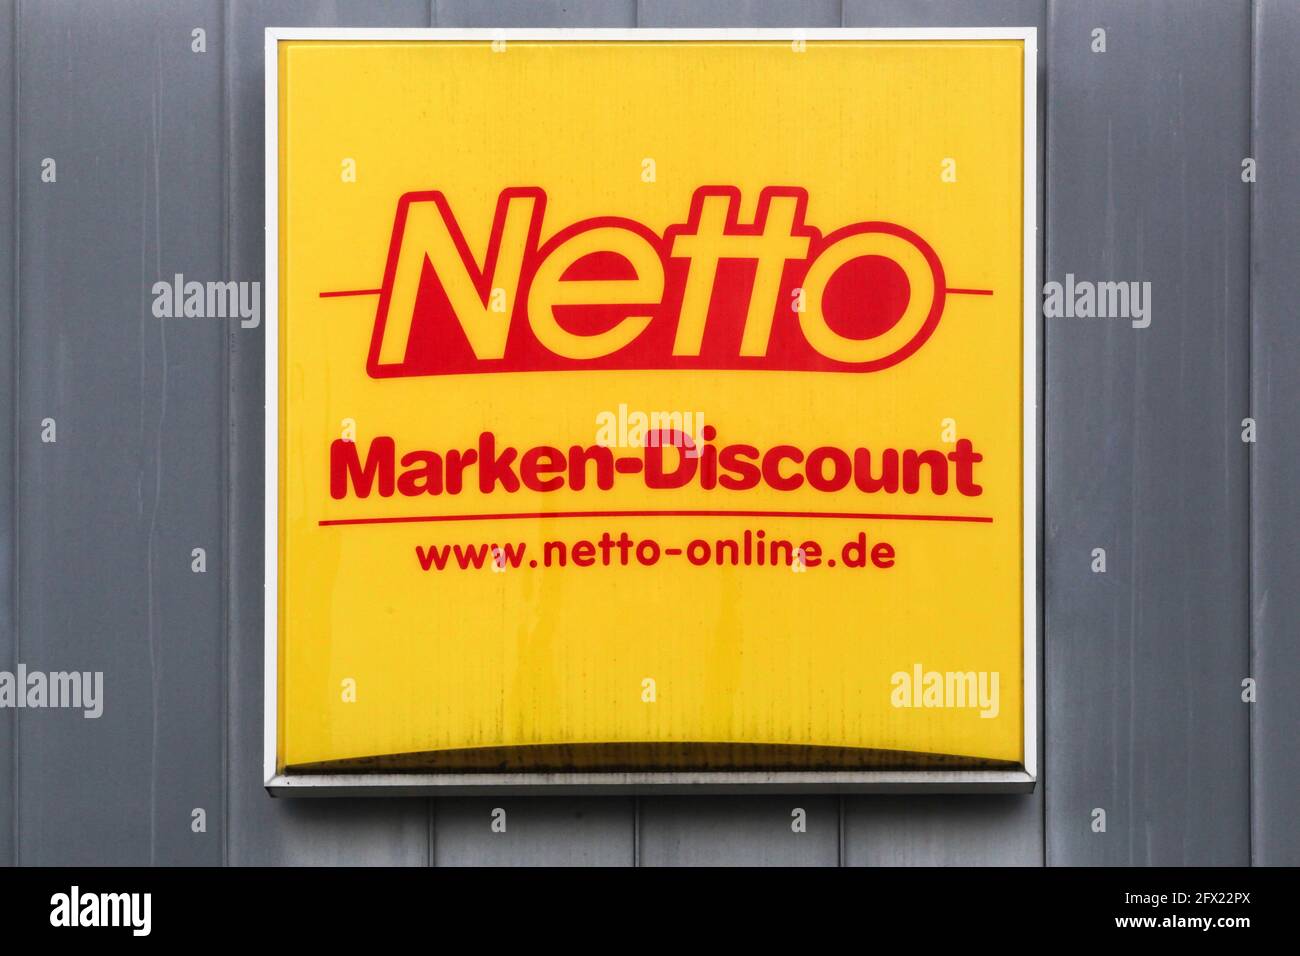 Berlin, Deutschland - 12. Juli 2020: Netto Marken-Discount ist eine deutsche Discounter-Supermarktkette Stockfoto